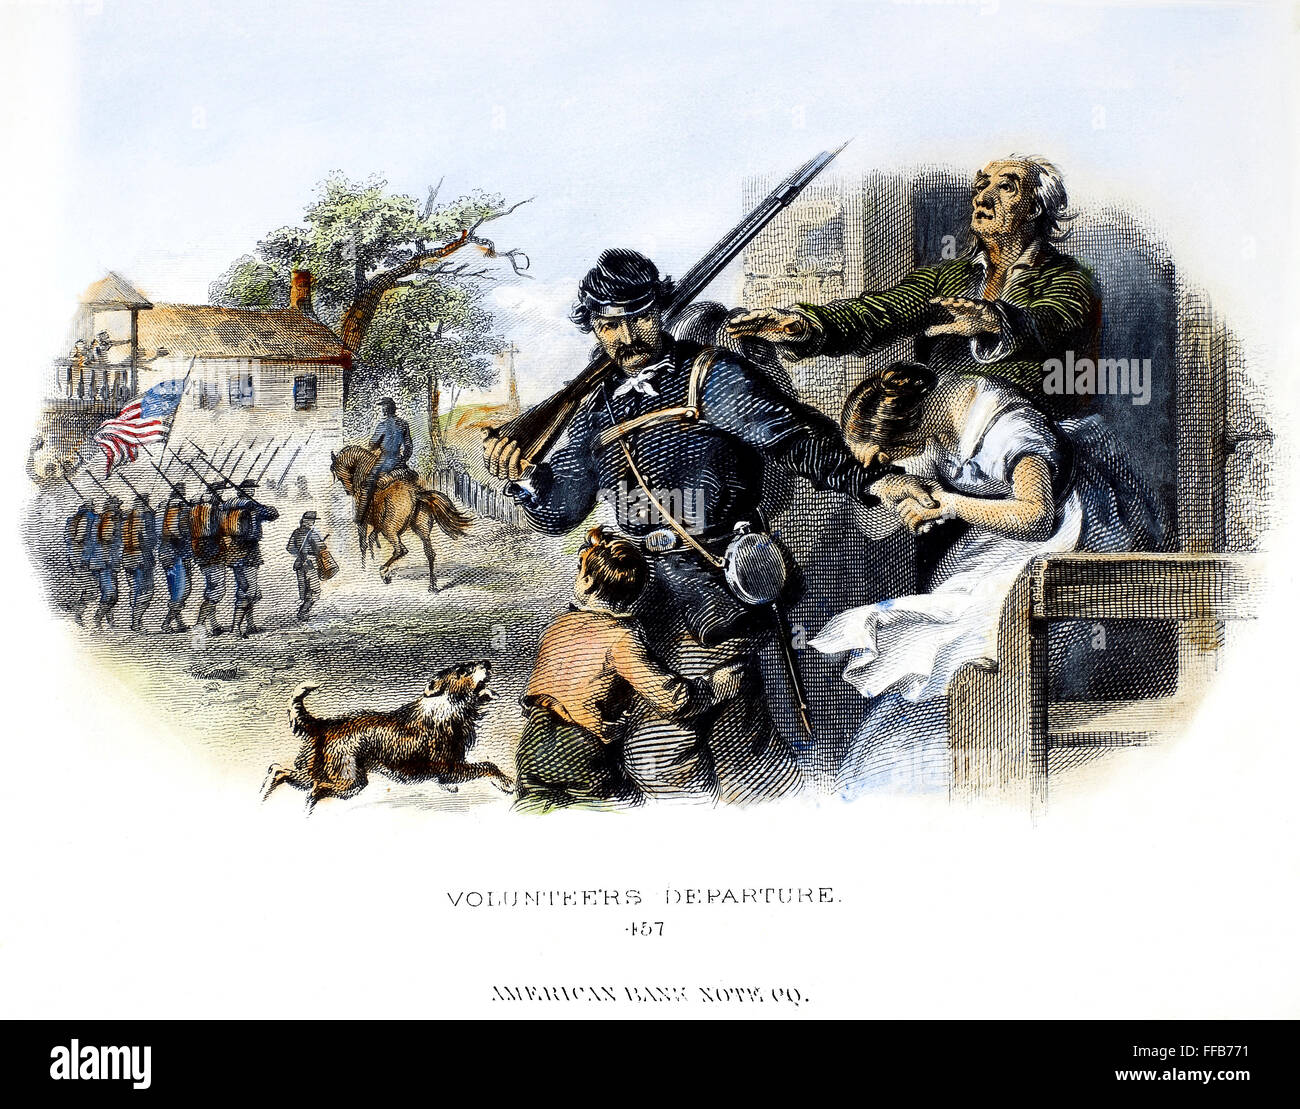 BÜRGERKRIEG: UNION FREIWILLIGE. /nDeparture eines Freiwilligen für die Anschluß-Armee während des amerikanischen Bürgerkriegs (1861-65). Stahlstich, American, c1870. Stockfoto